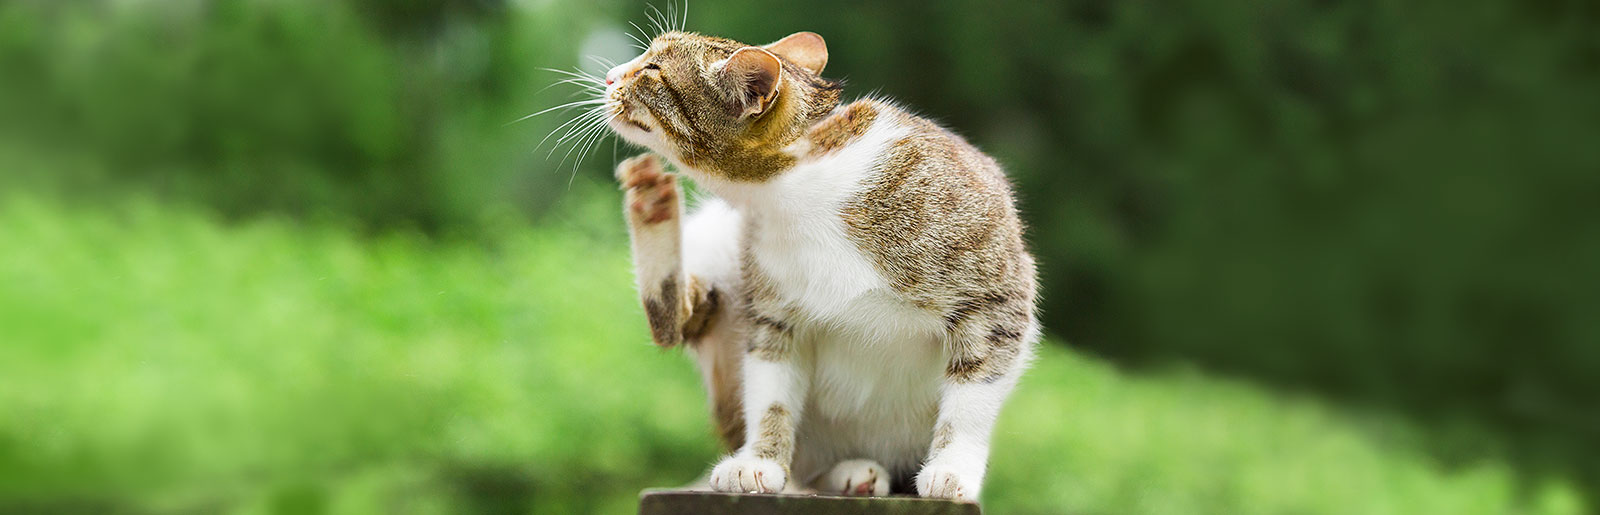 Juckreiz und Ausschlag als Symptom einer Futtermittelallergie bei Katzen